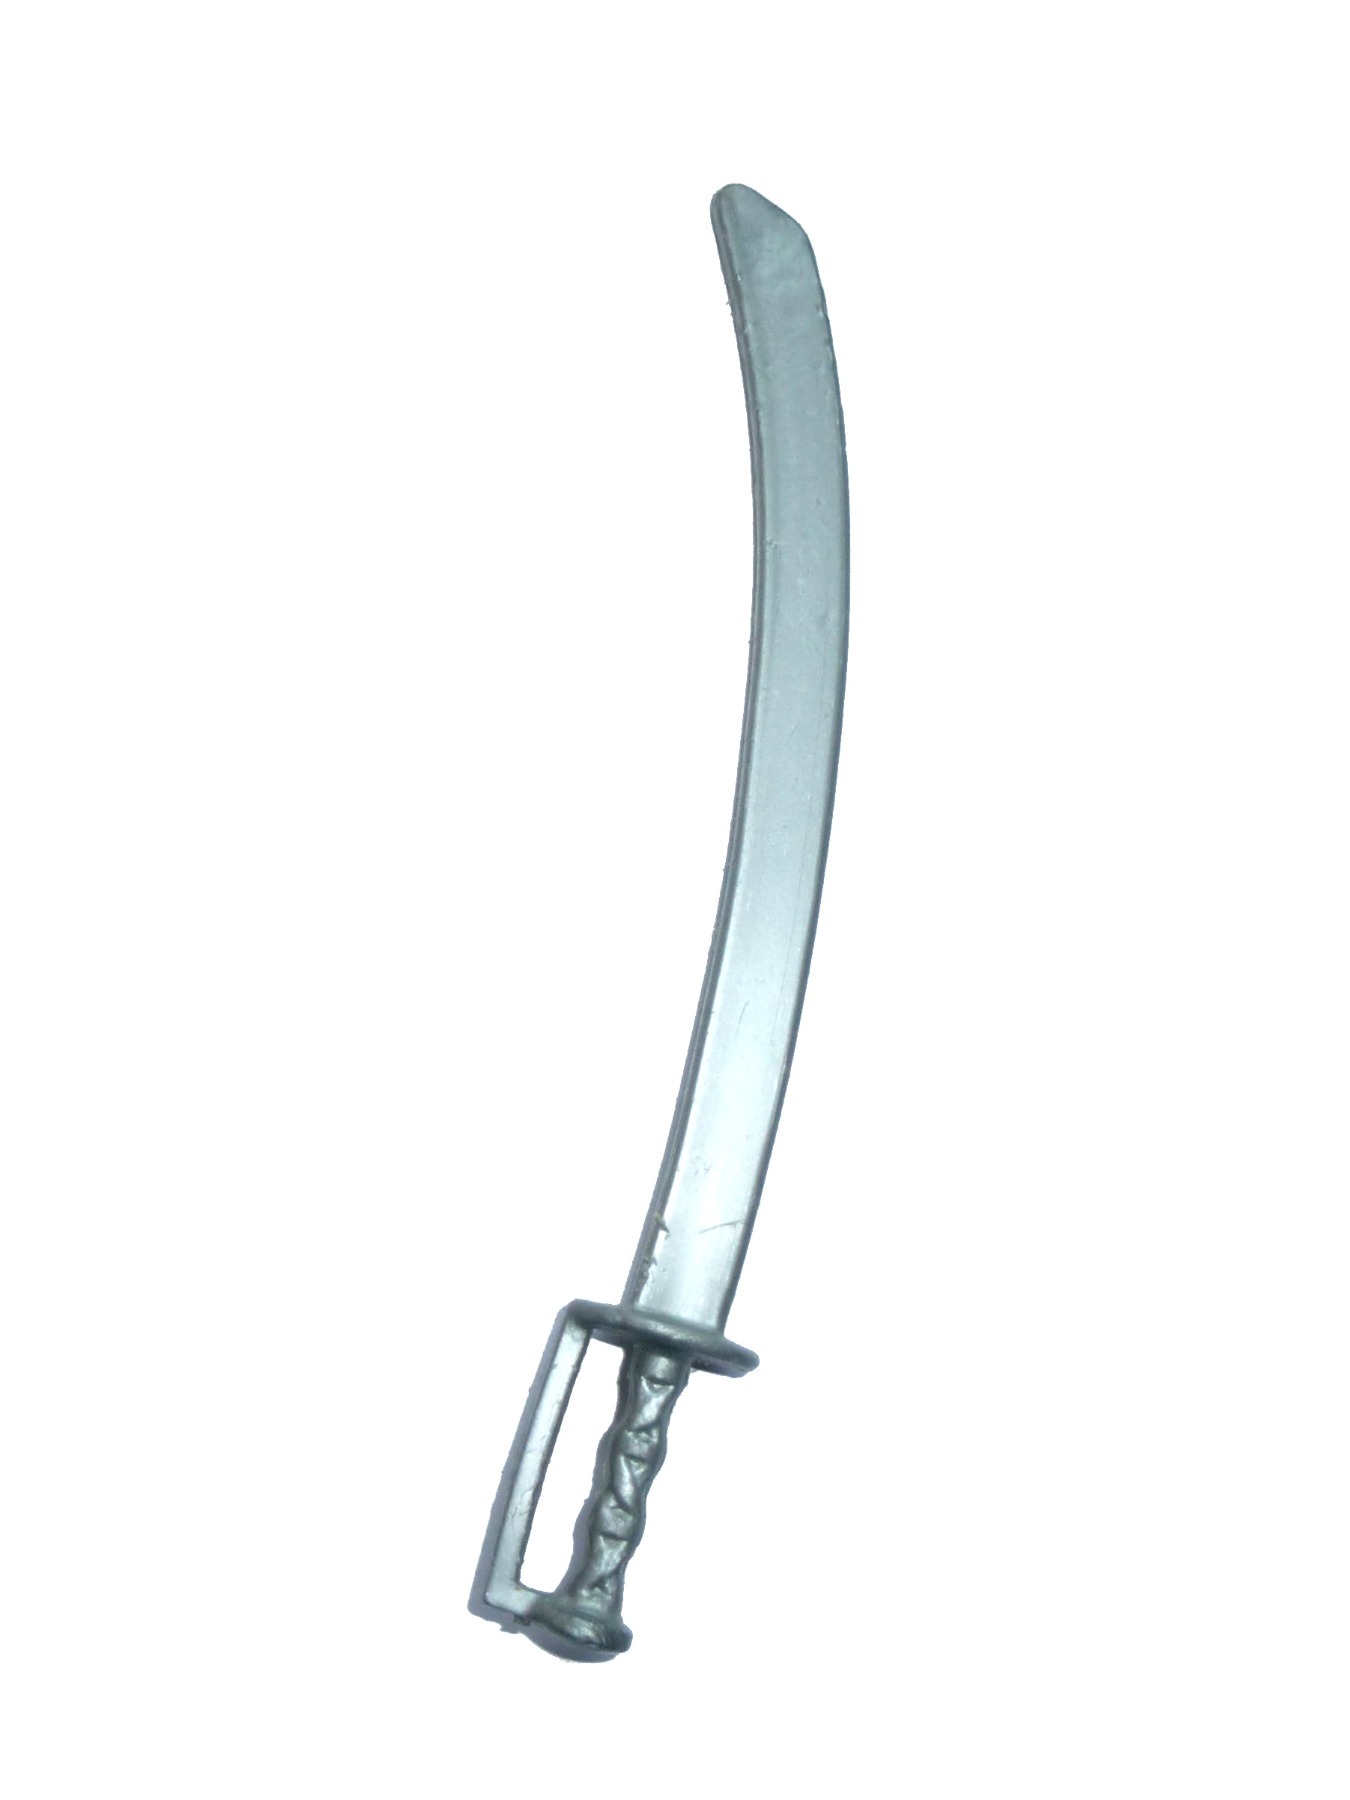 Ninjor sword / weapon